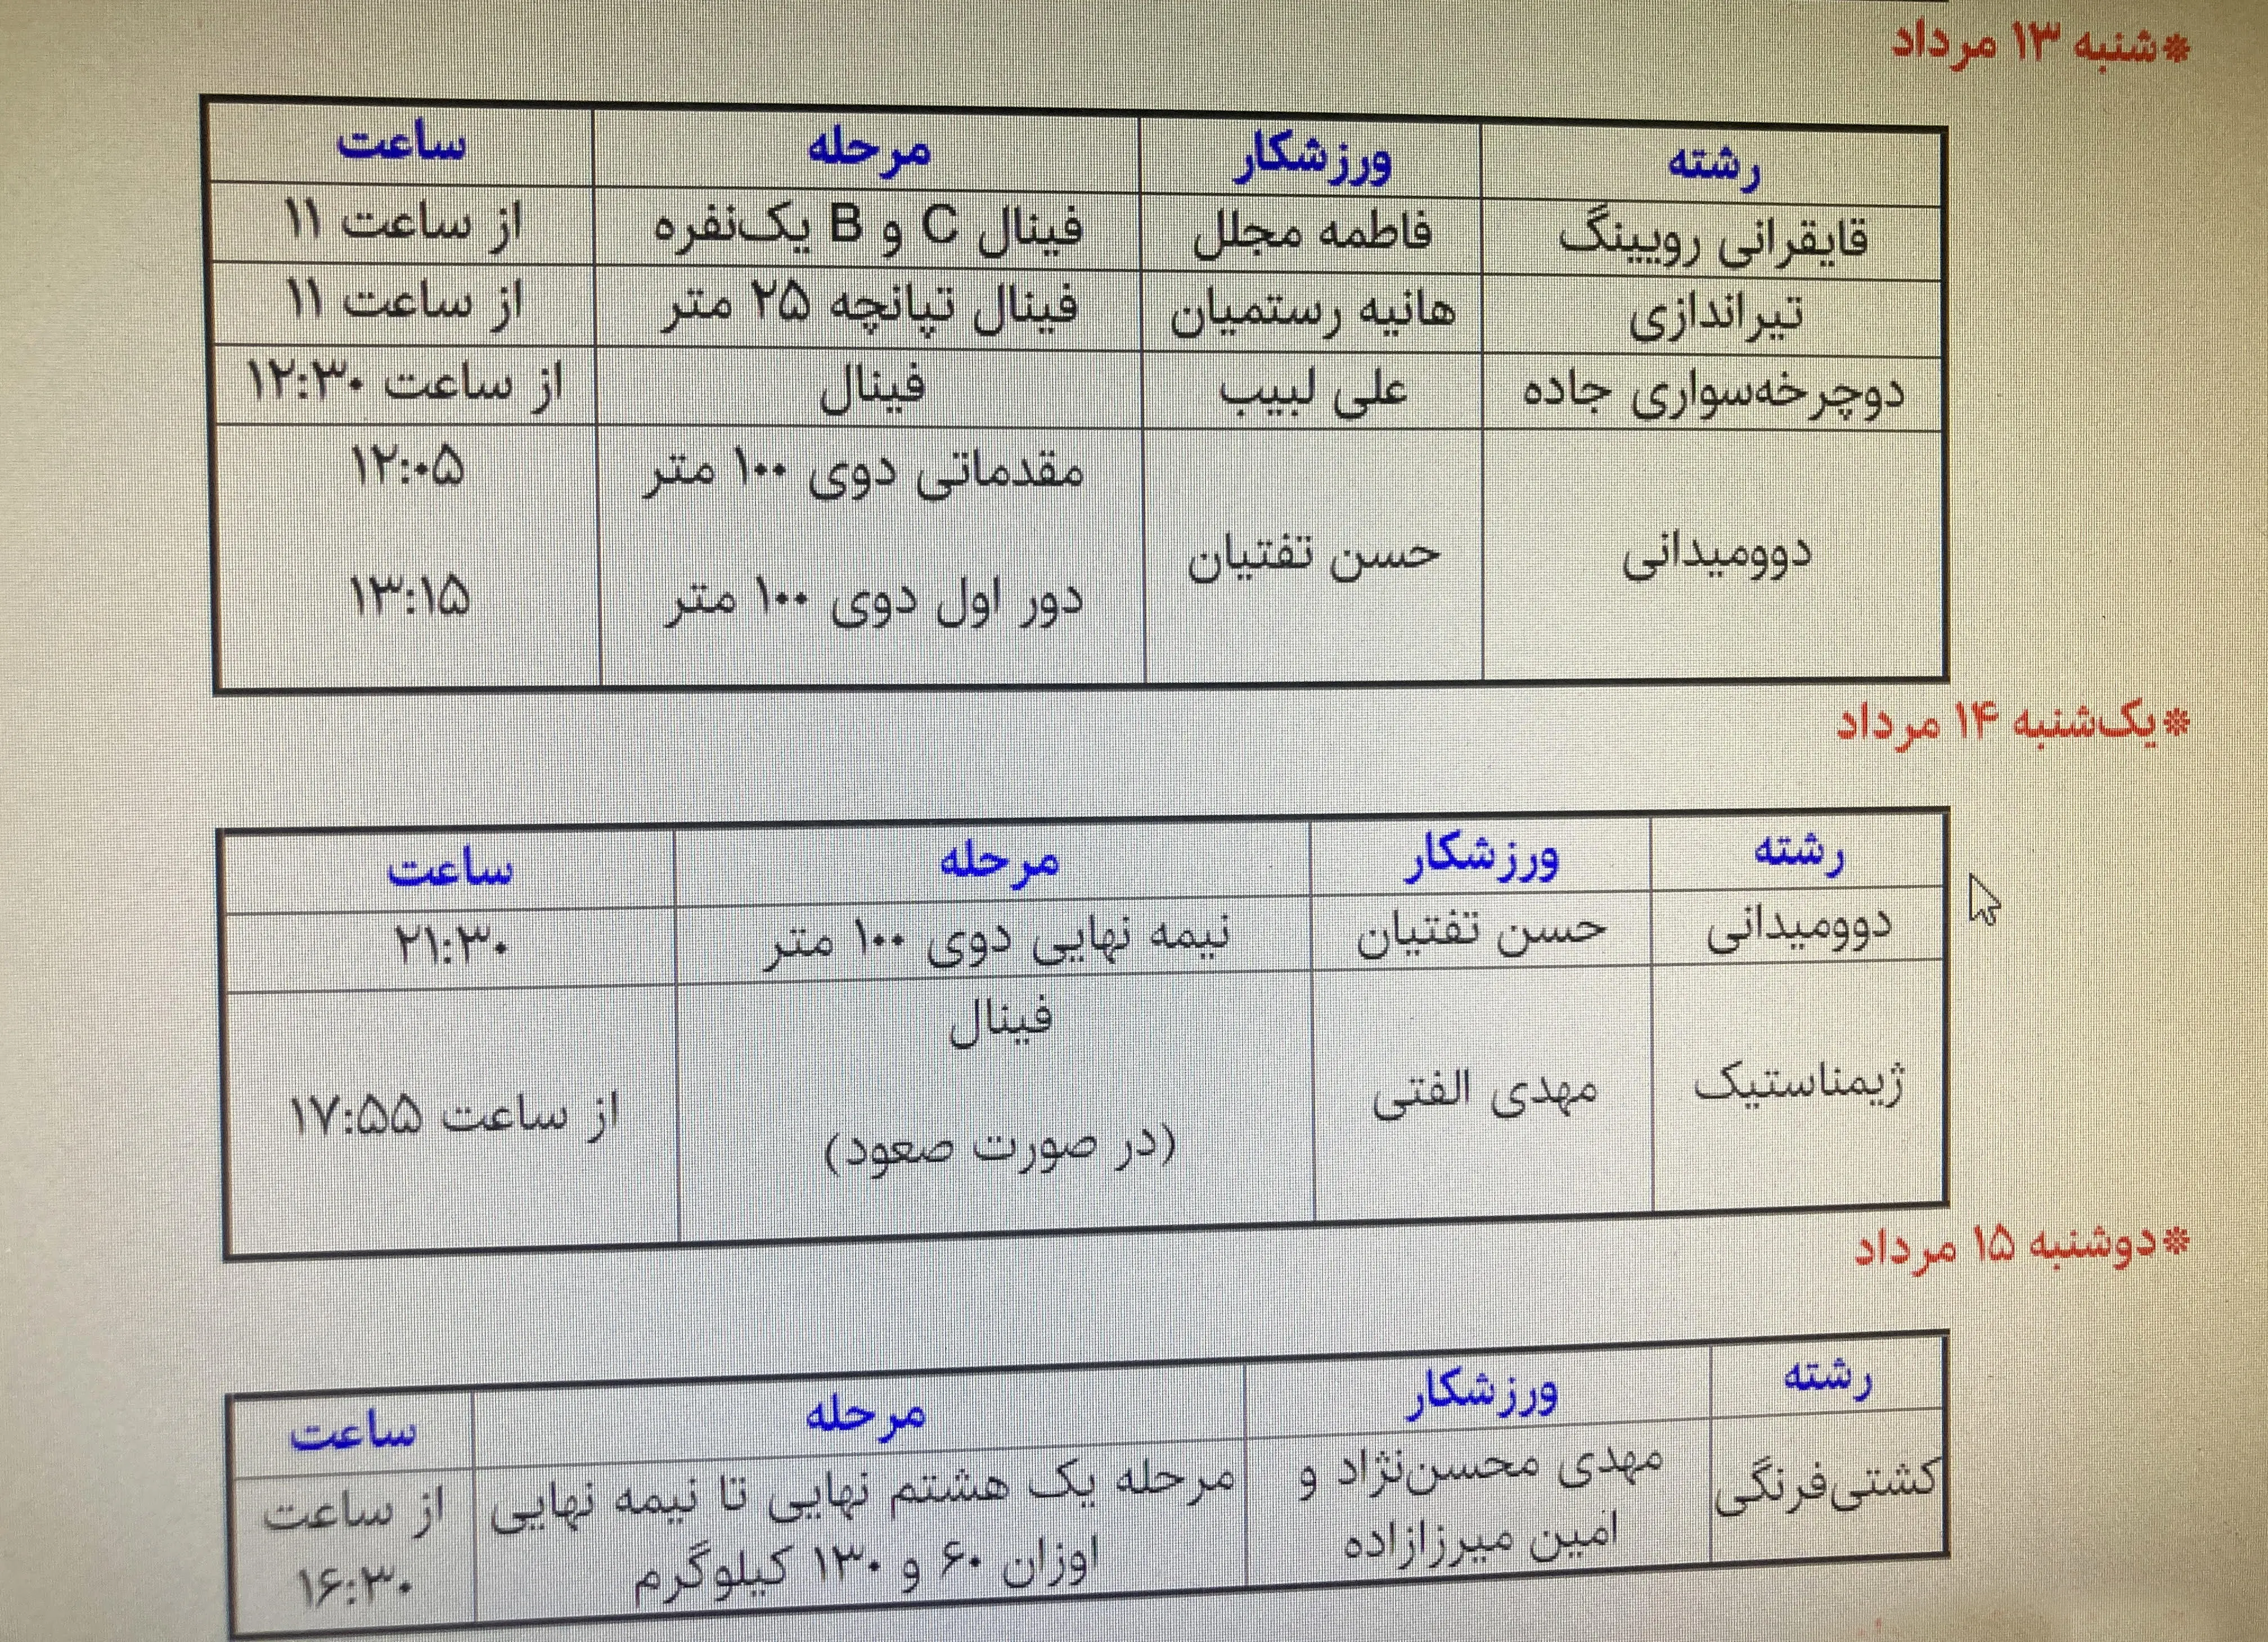 برنامه مسابقات ایران در المپیک پاریس